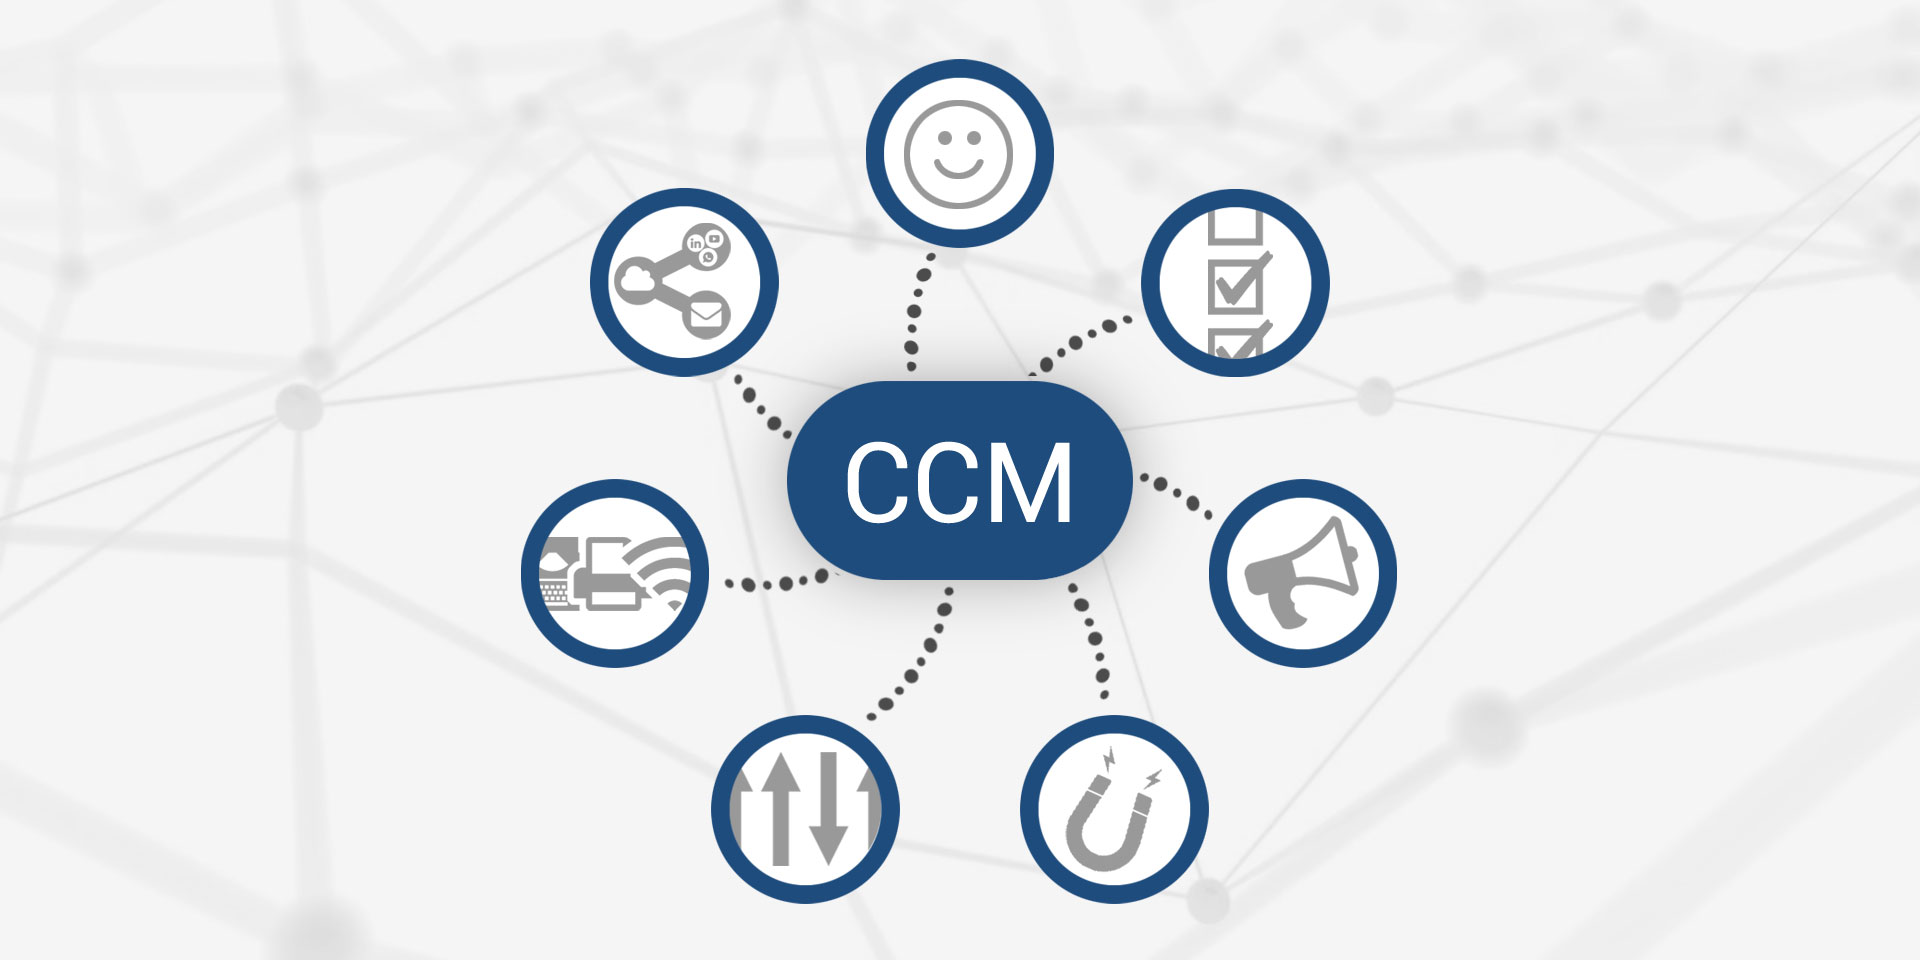 La implementación del Software de CCM centralizado también  facilita  las  interacciones  con  el  cliente  en  todos  los  canales  de comunicación.